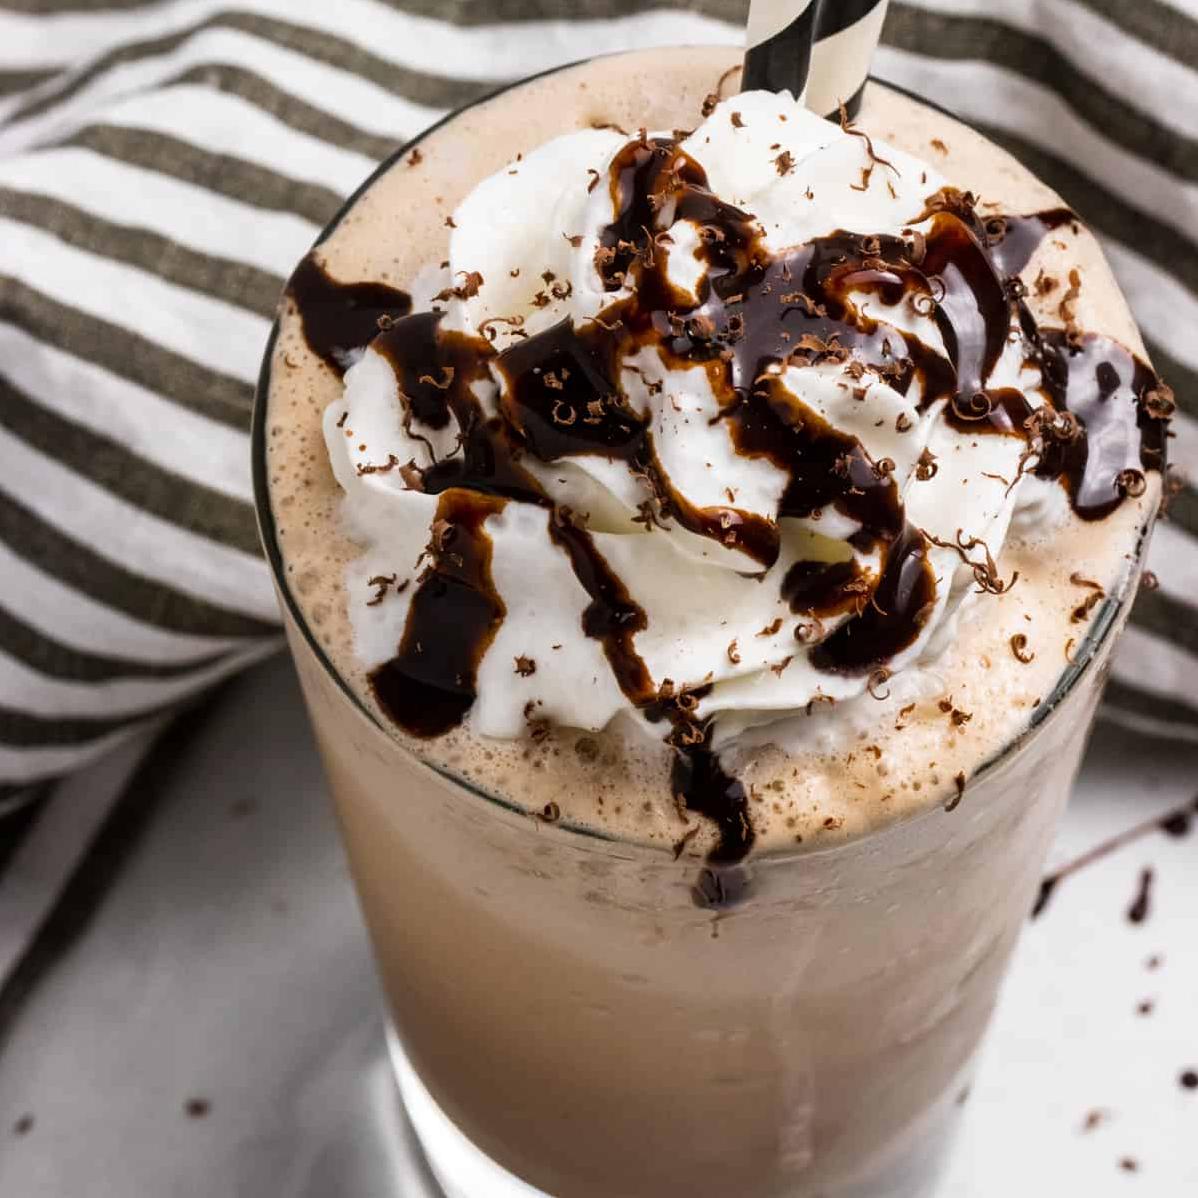  Sip, sip, hooray for this delicious Frappe Mocha treat! #CoffeeCraze